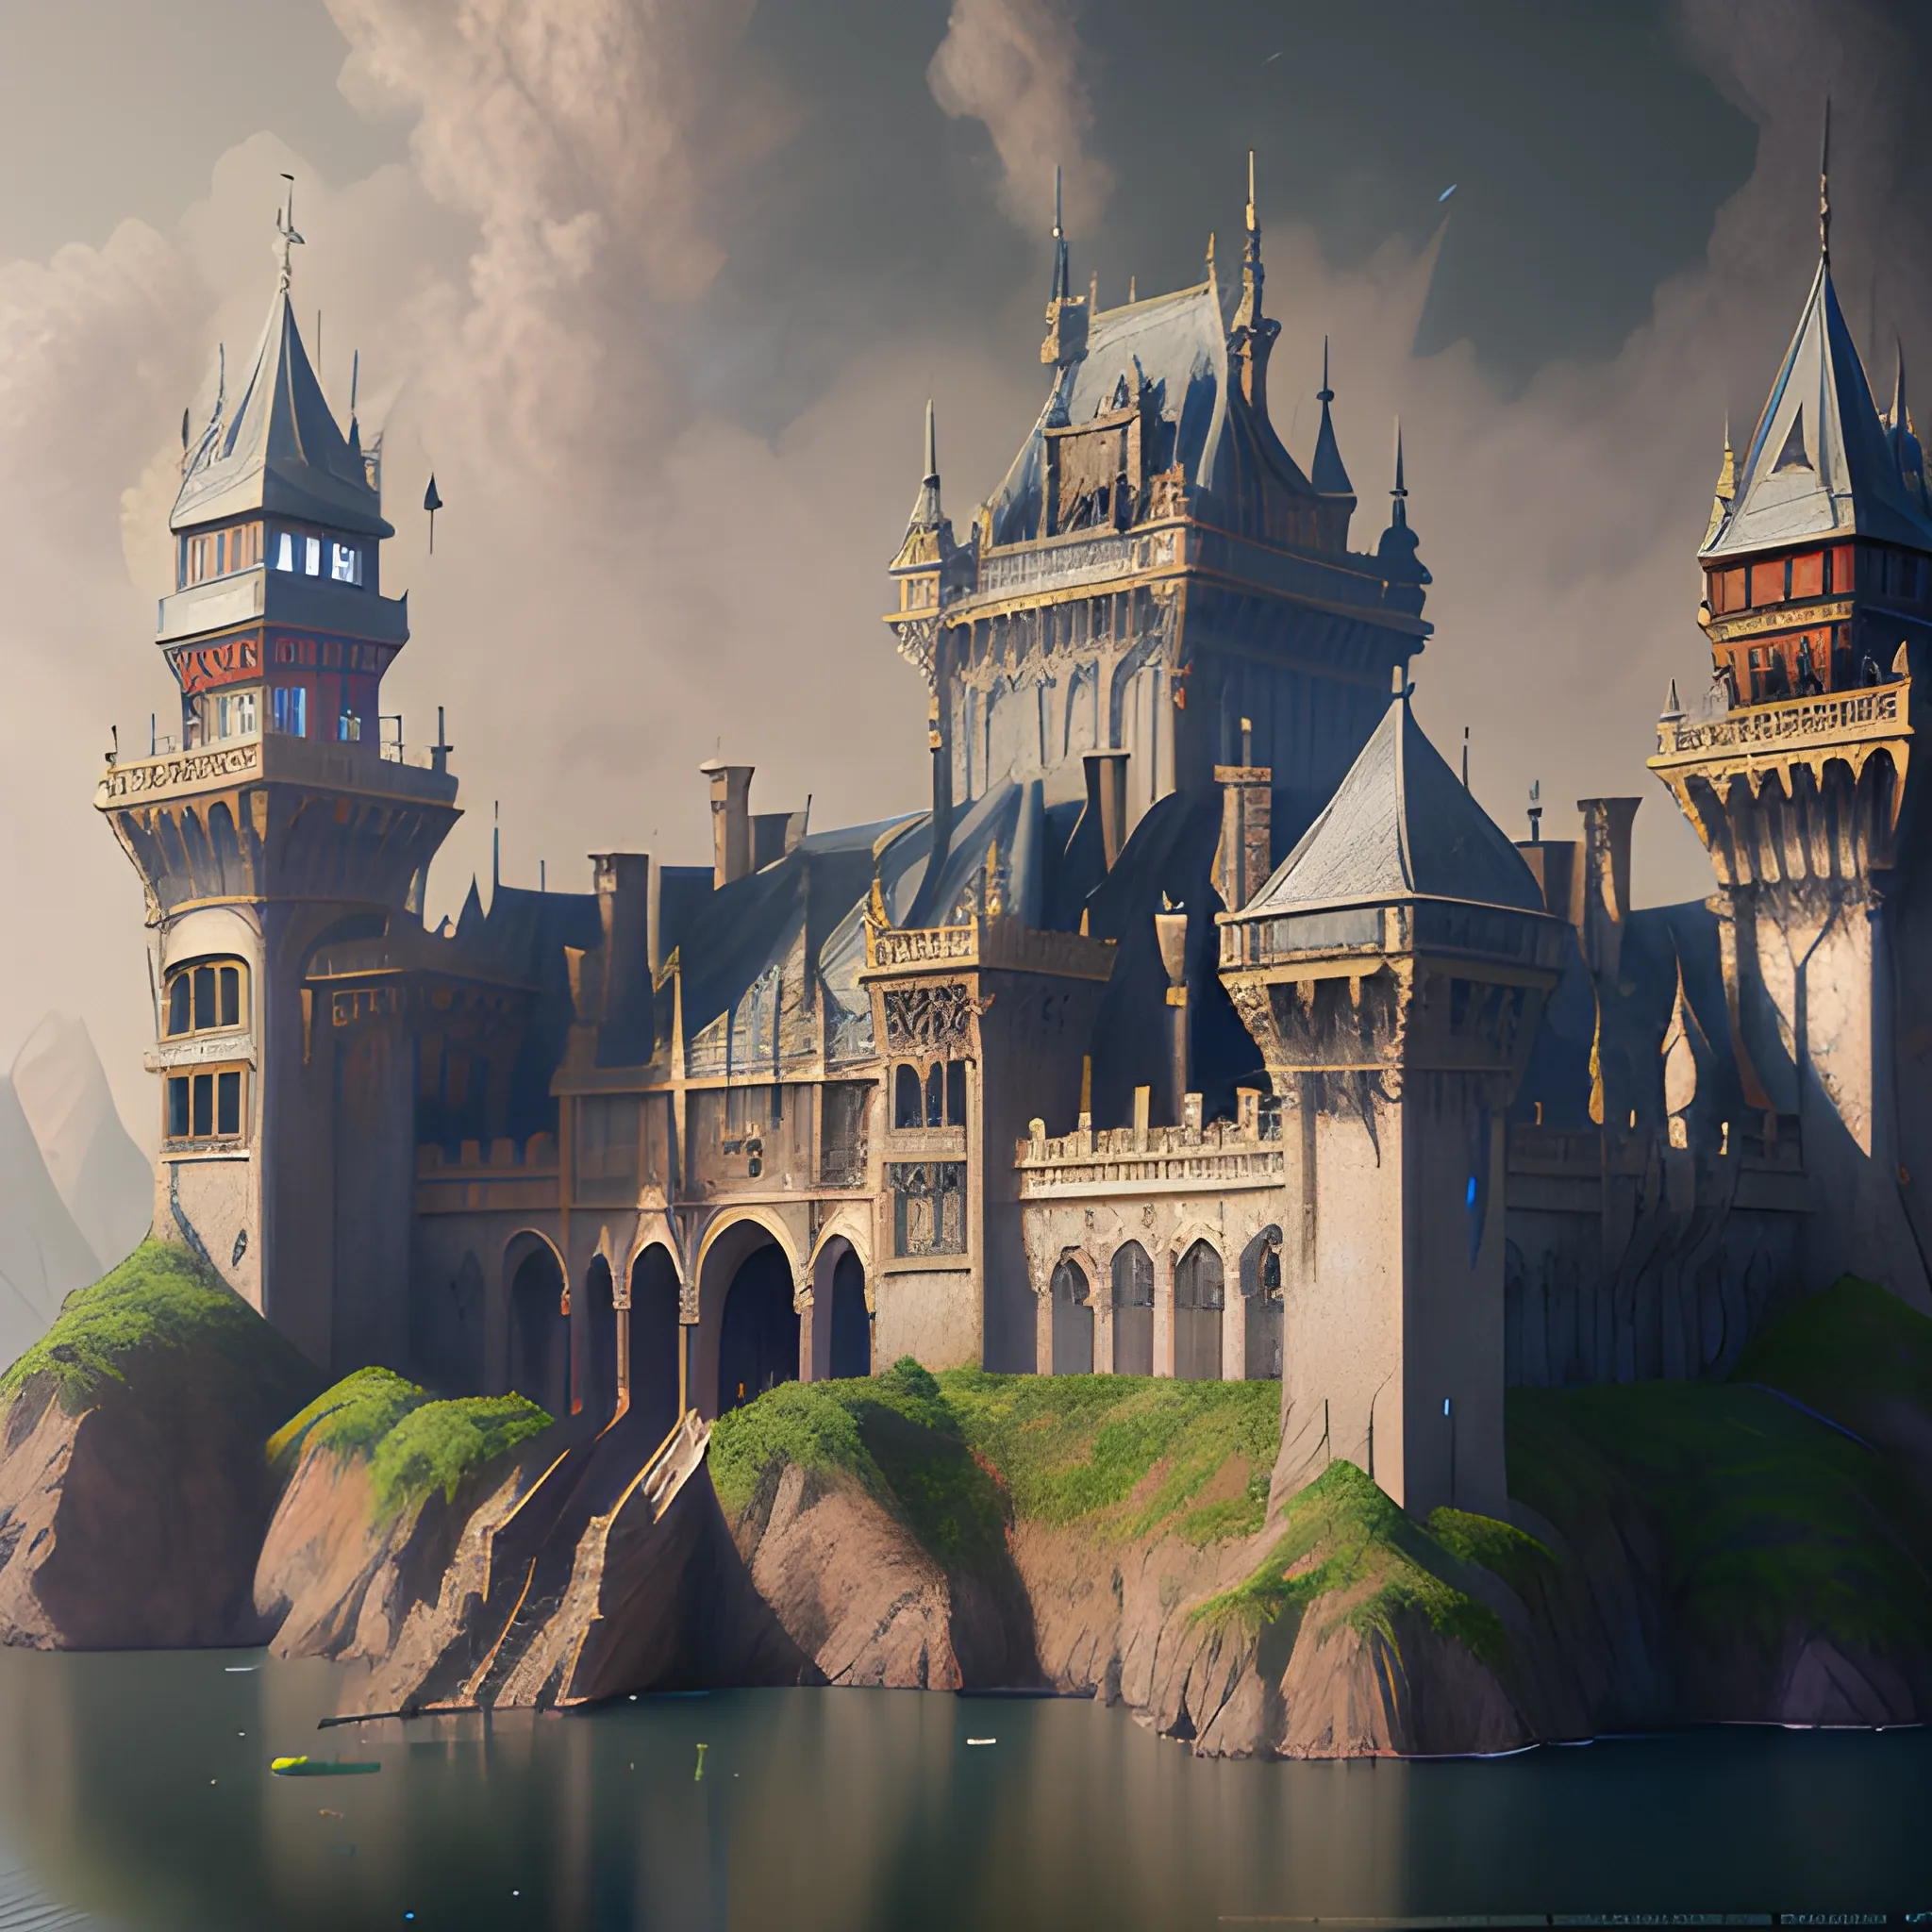 fantasy water palace